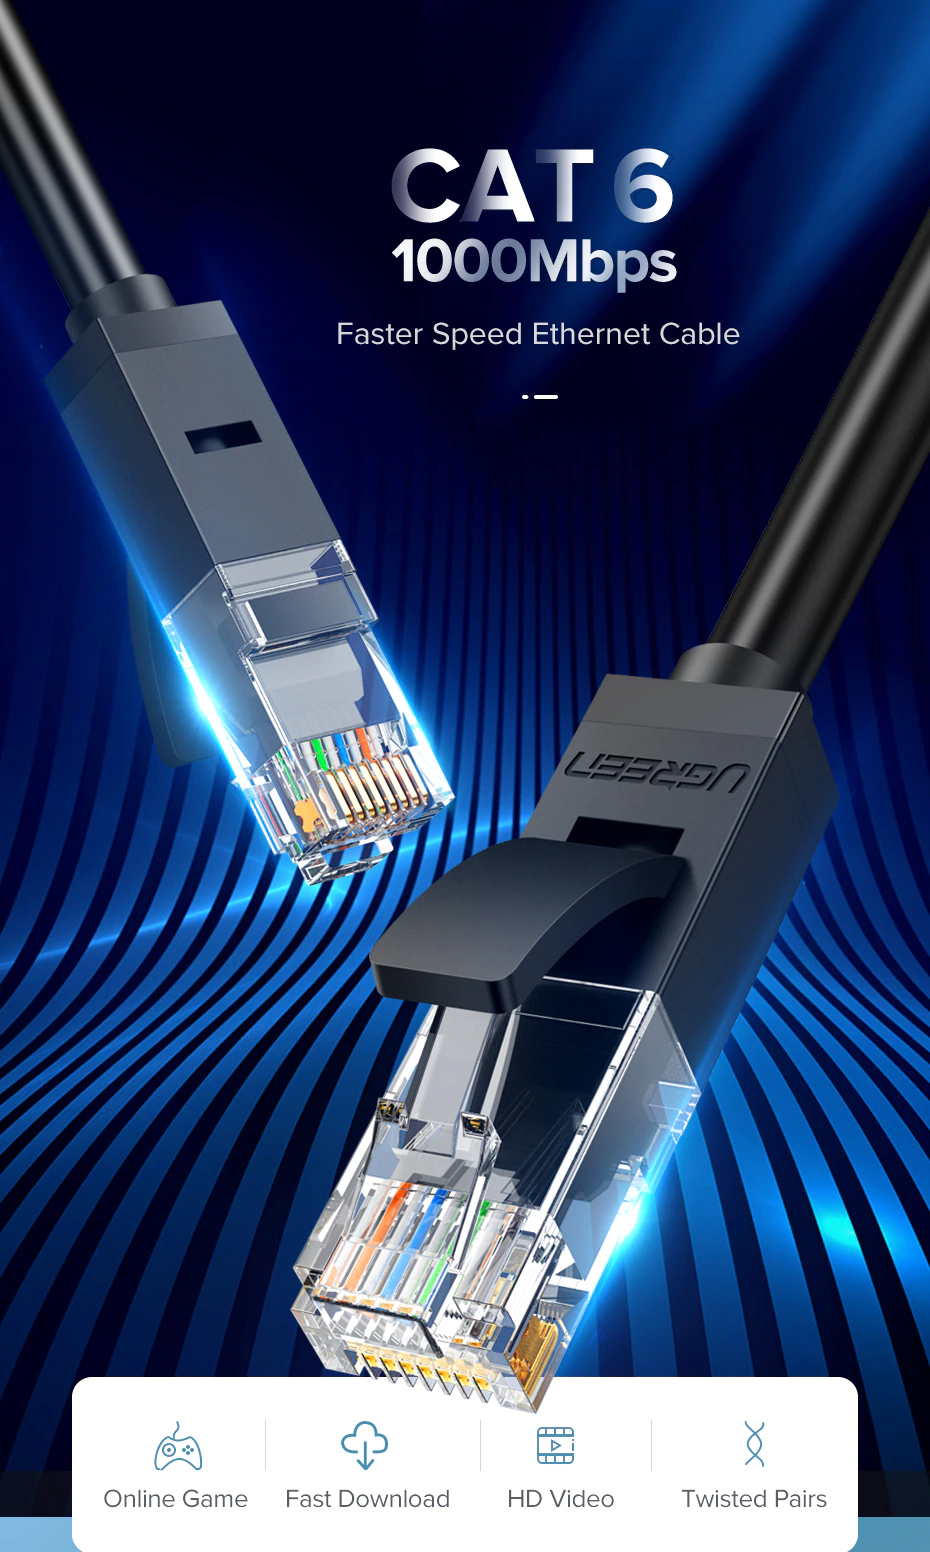 ภาพประกอบคำอธิบาย UGREEN รุ่น NW102 สายแลน Cat6 LAN Ethernet Cable Gigabit RJ45 รองรับ 1000Mbps ความยาว 50CM-10M มี 2 สี ดำ/น้ำเงิน